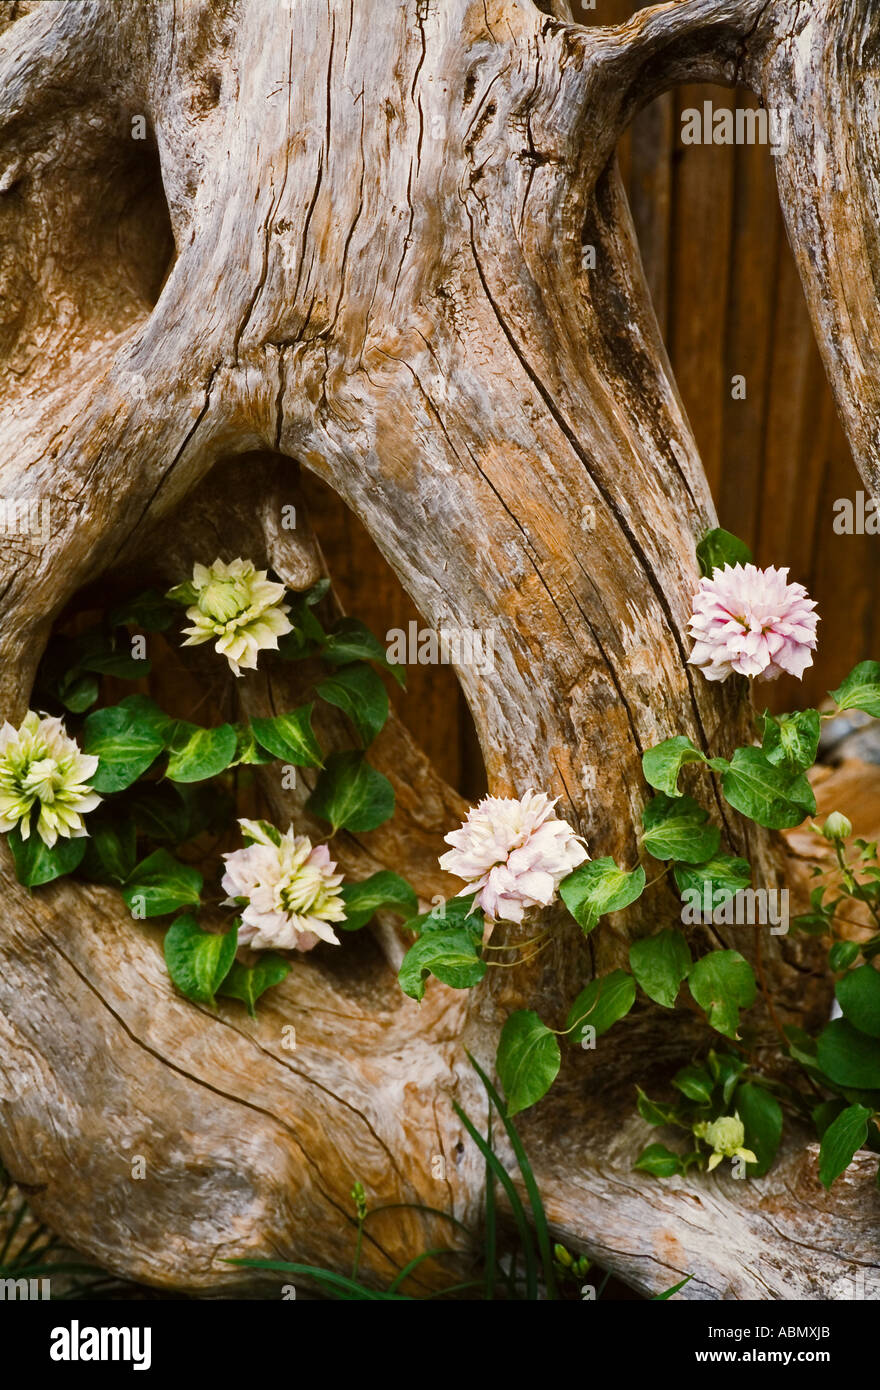 La clematide fiori disposti all'interno di un vecchio ceppo di albero Foto Stock